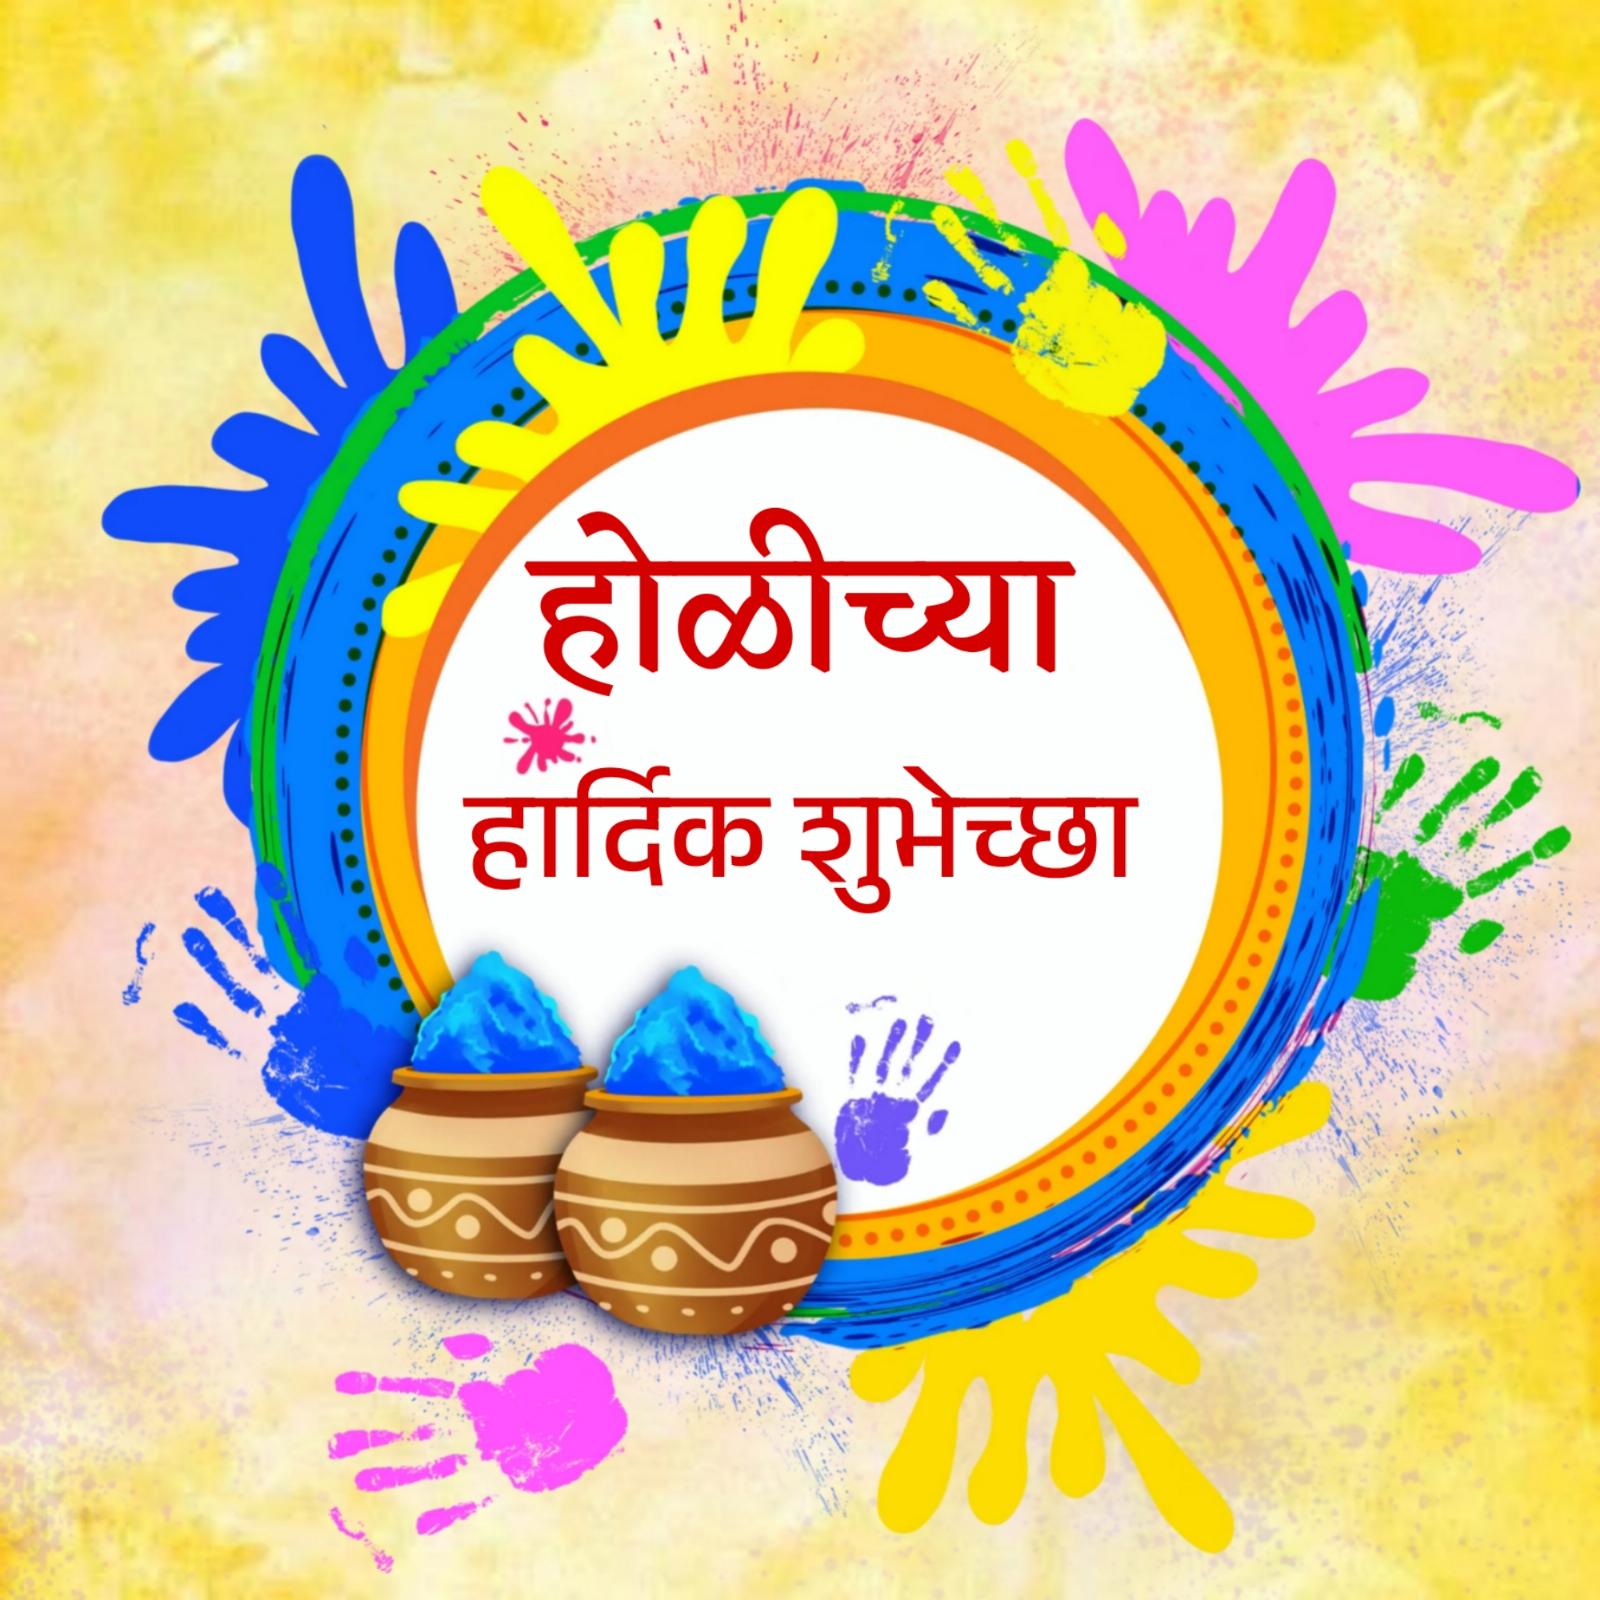 Happy Holi Images in Marathi